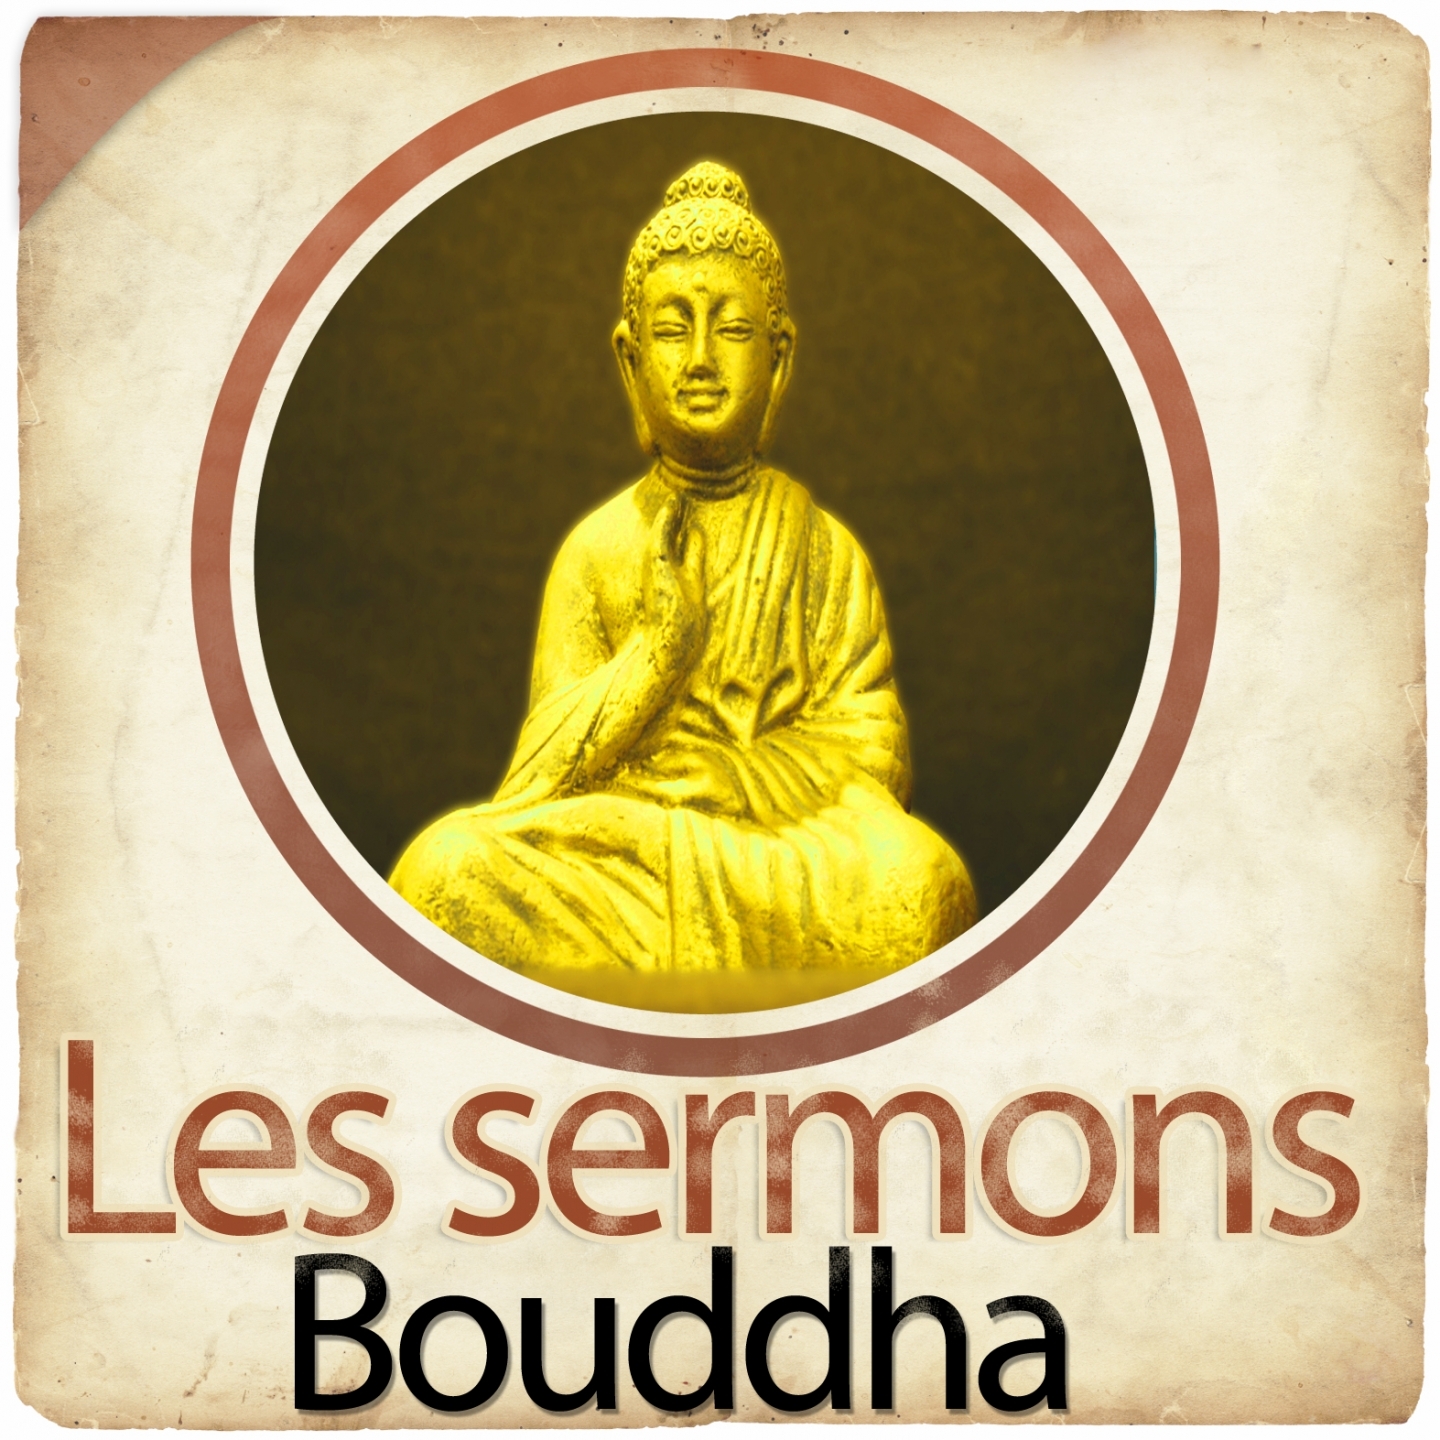 Les sermons de Bouddha, chapitre 8